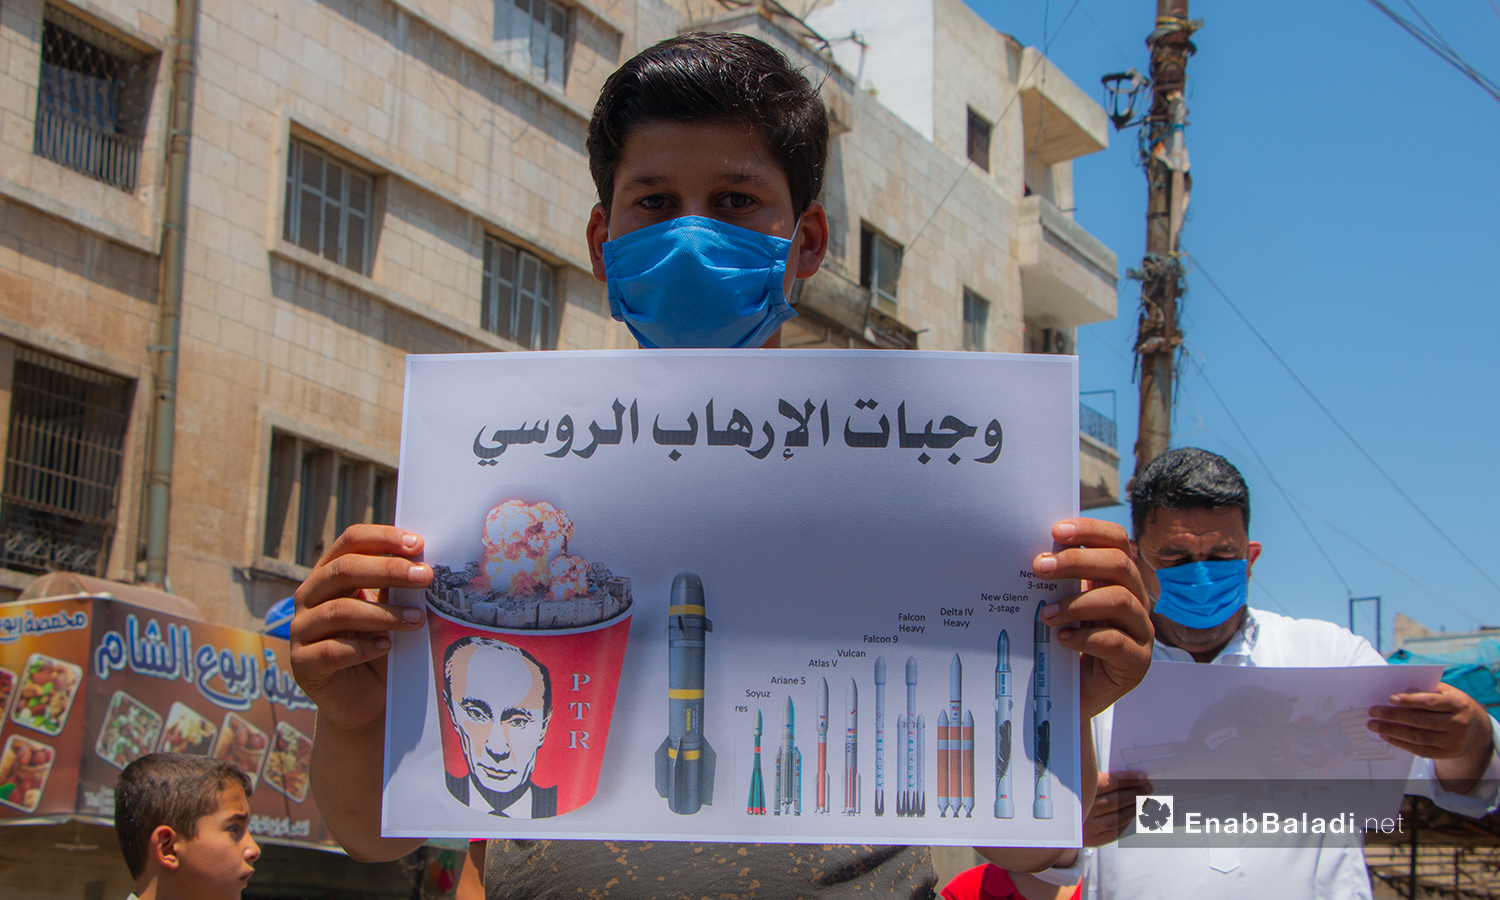 طفل يحمل لافتة تحوي أنواع الصواريخ التي استهدفت الشعب السوري - 10 تموز 2020 (عنب بلدي/أنس الخولي)